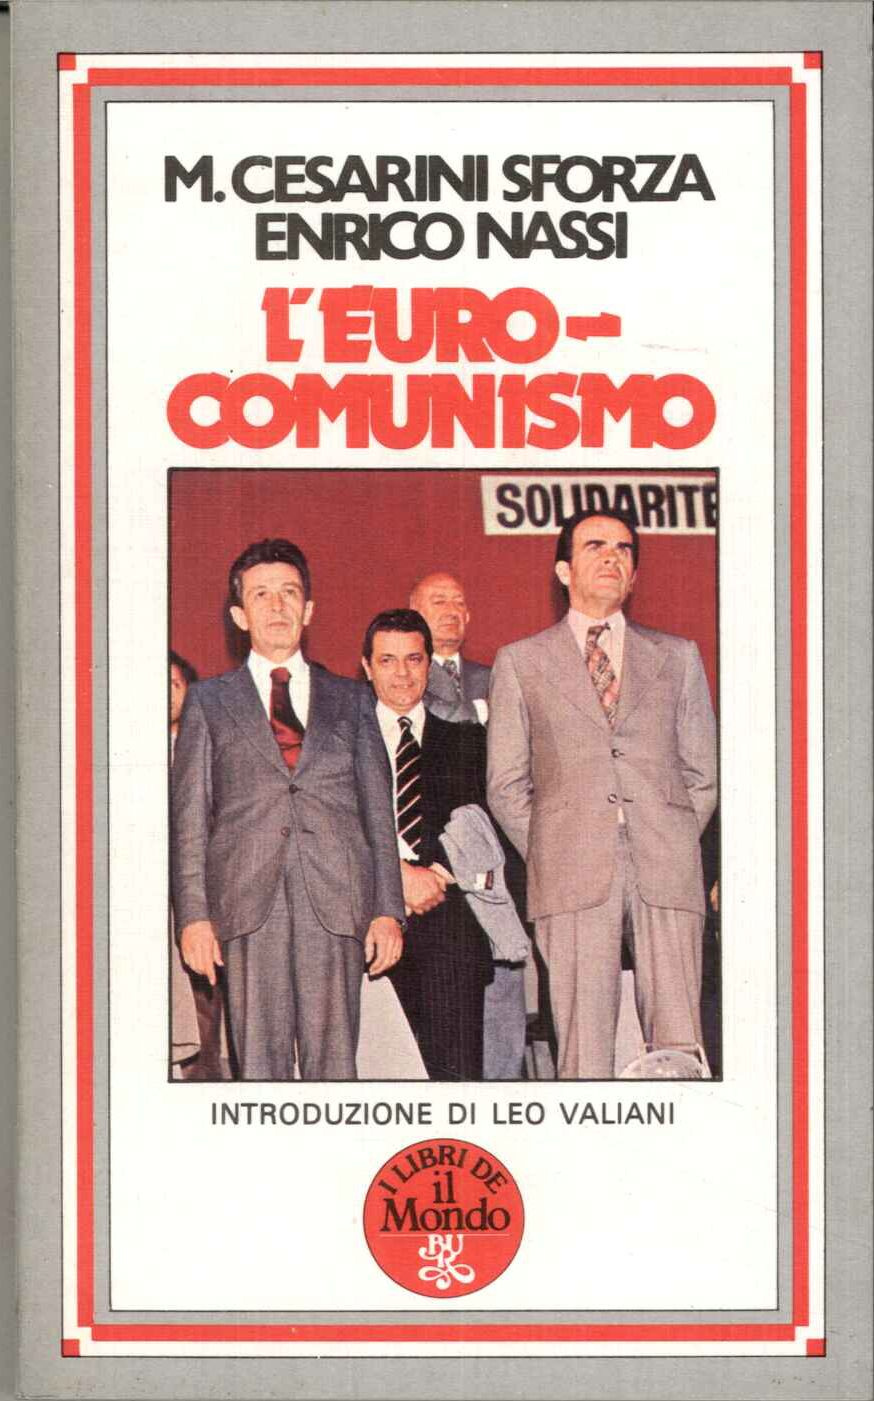 L'euro-comunismo